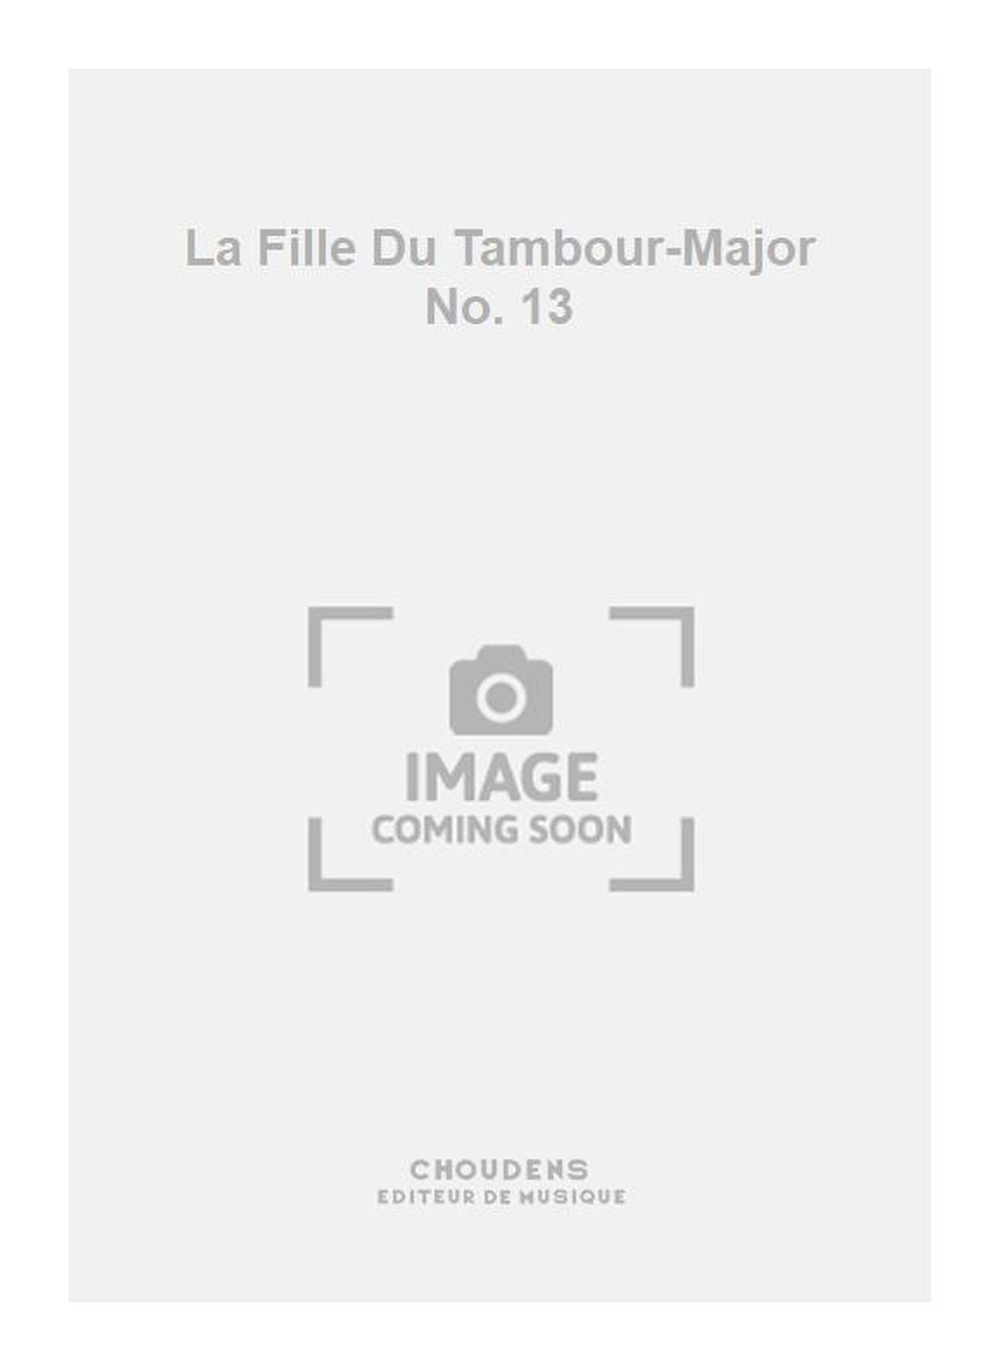 La Fille Du Tambour-Major No. 13